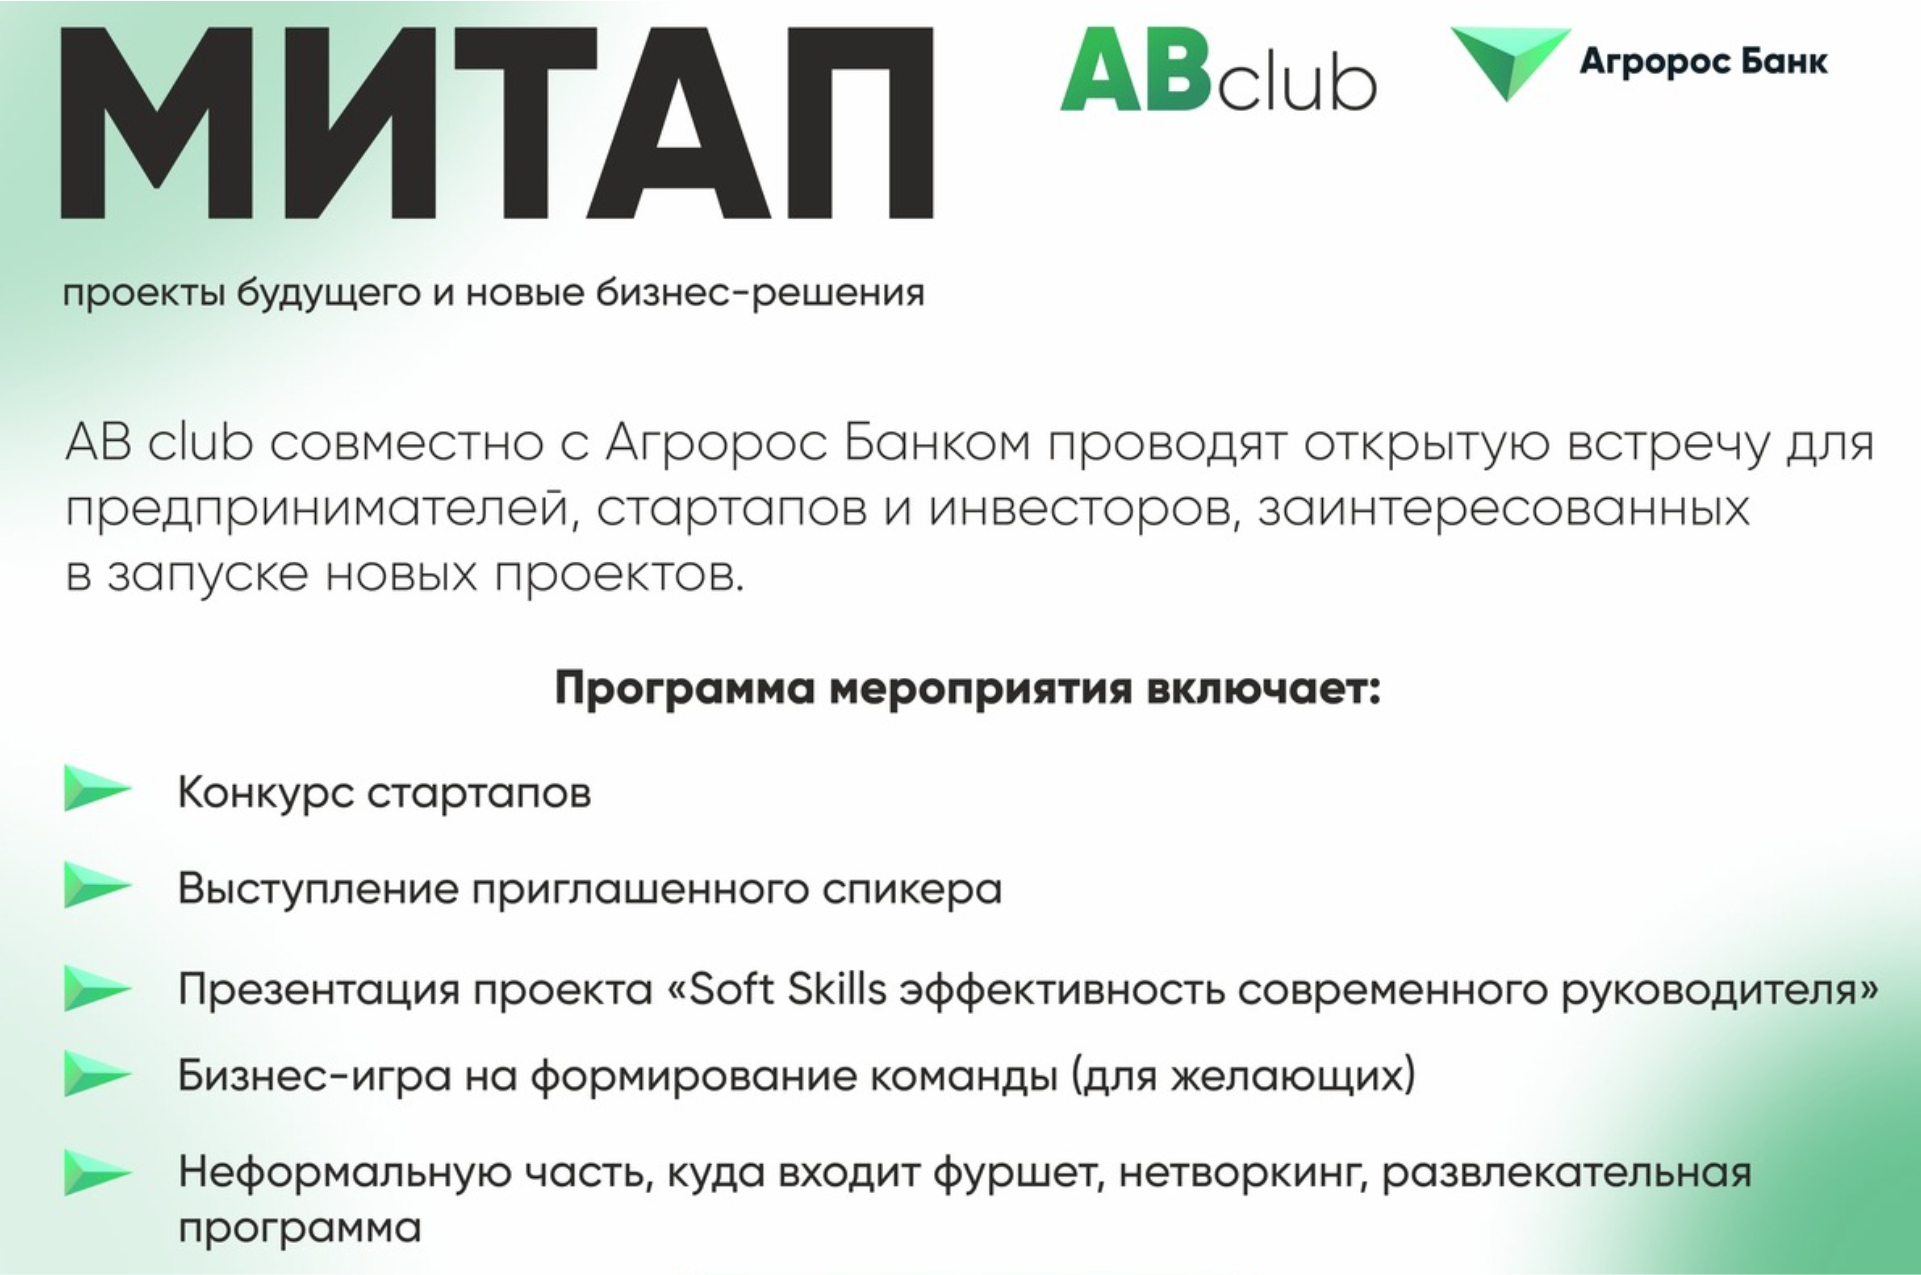 В Волгограде пройдет мероприятие для предпринимателей заинтересованных в запуске новых проектов